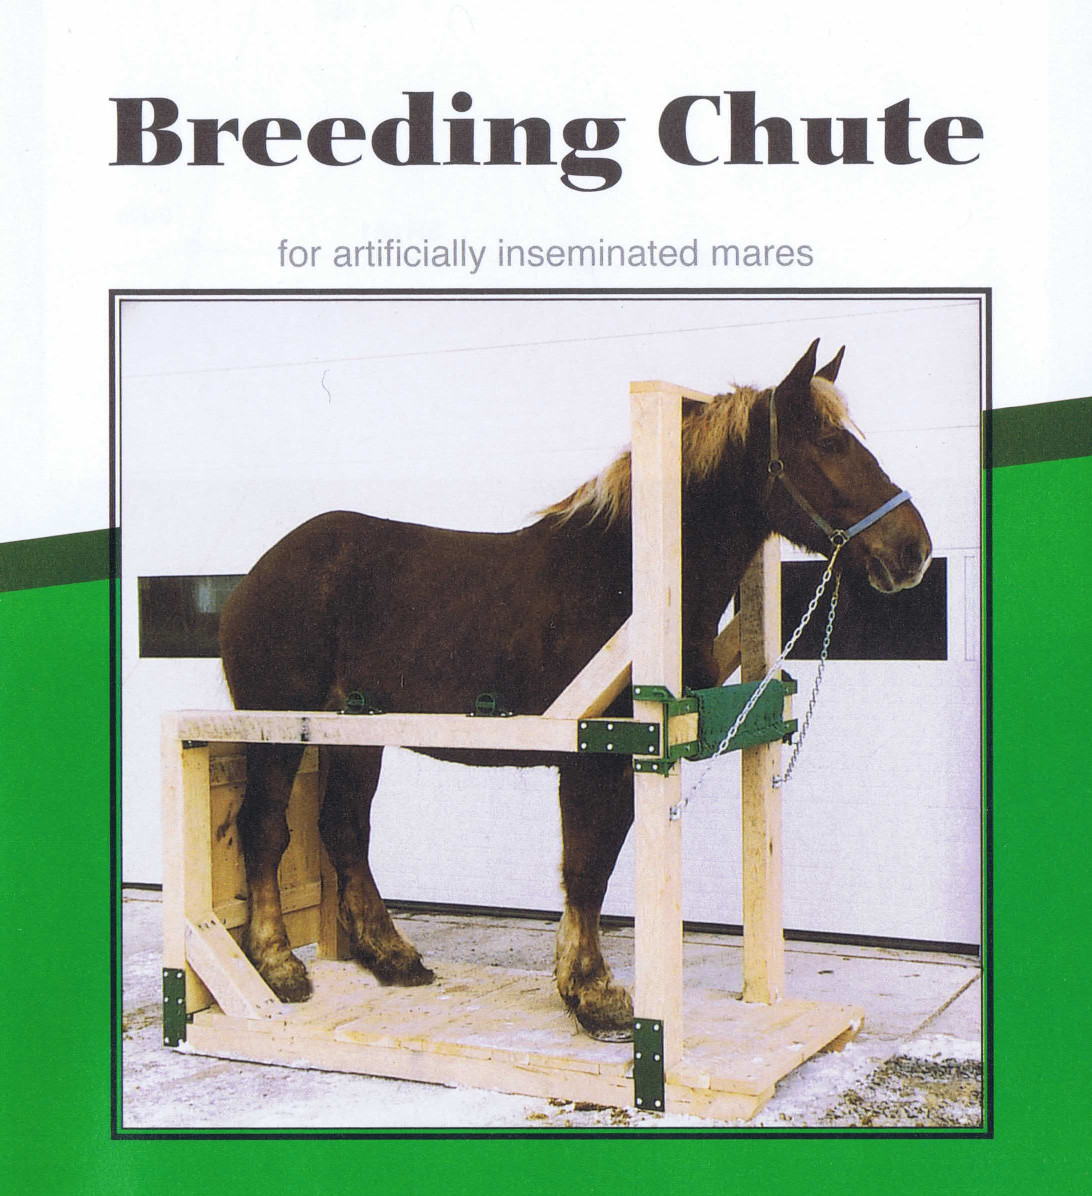 Breeding chute picture